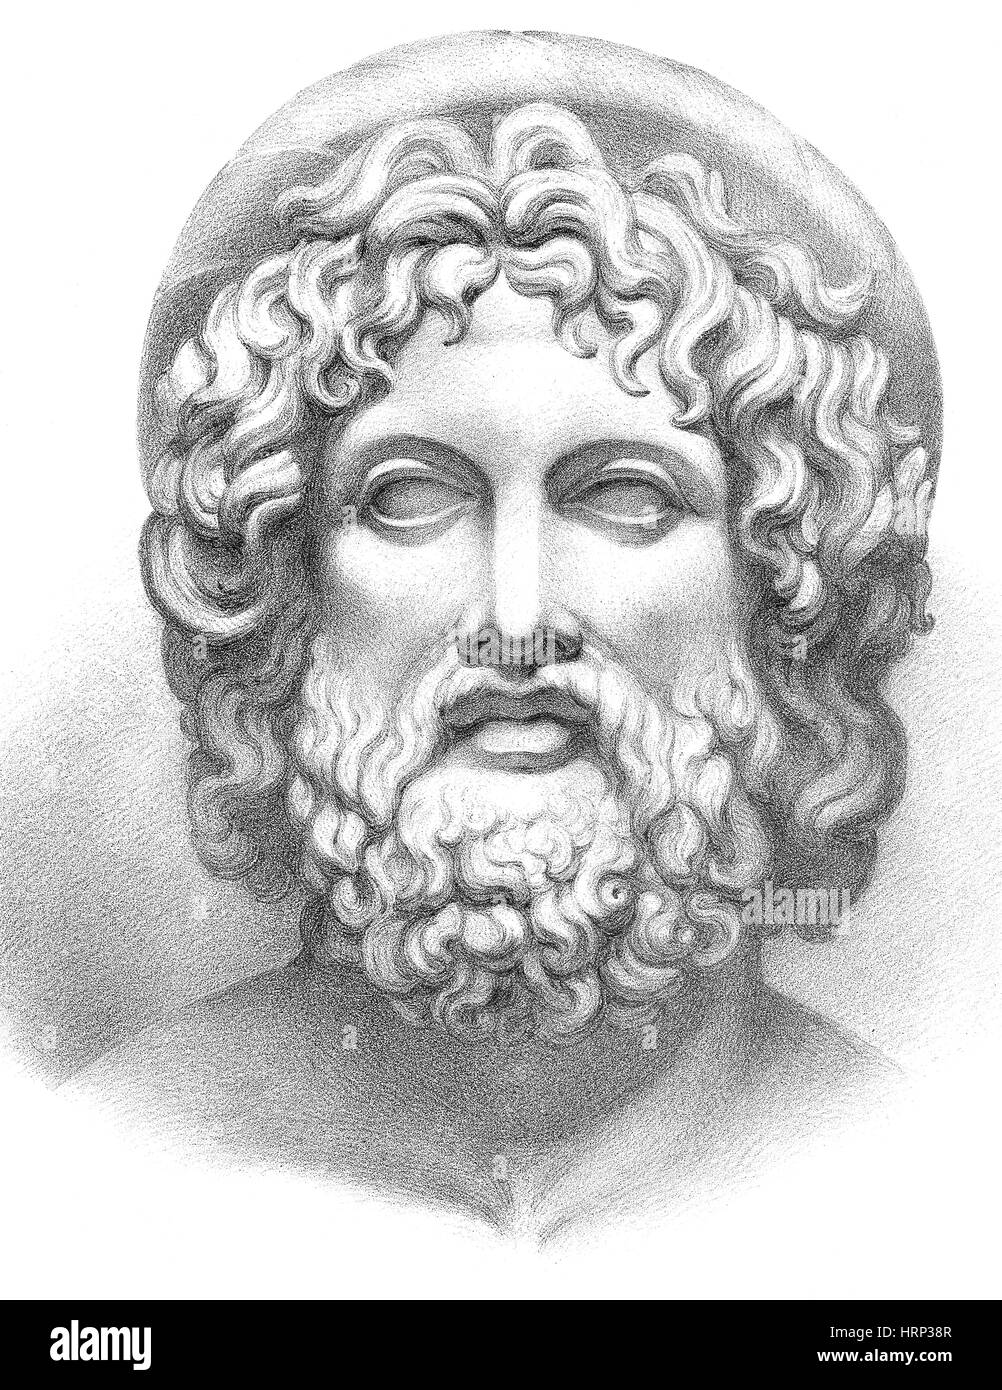 Esculape, le dieu grec de la médecine Banque D'Images